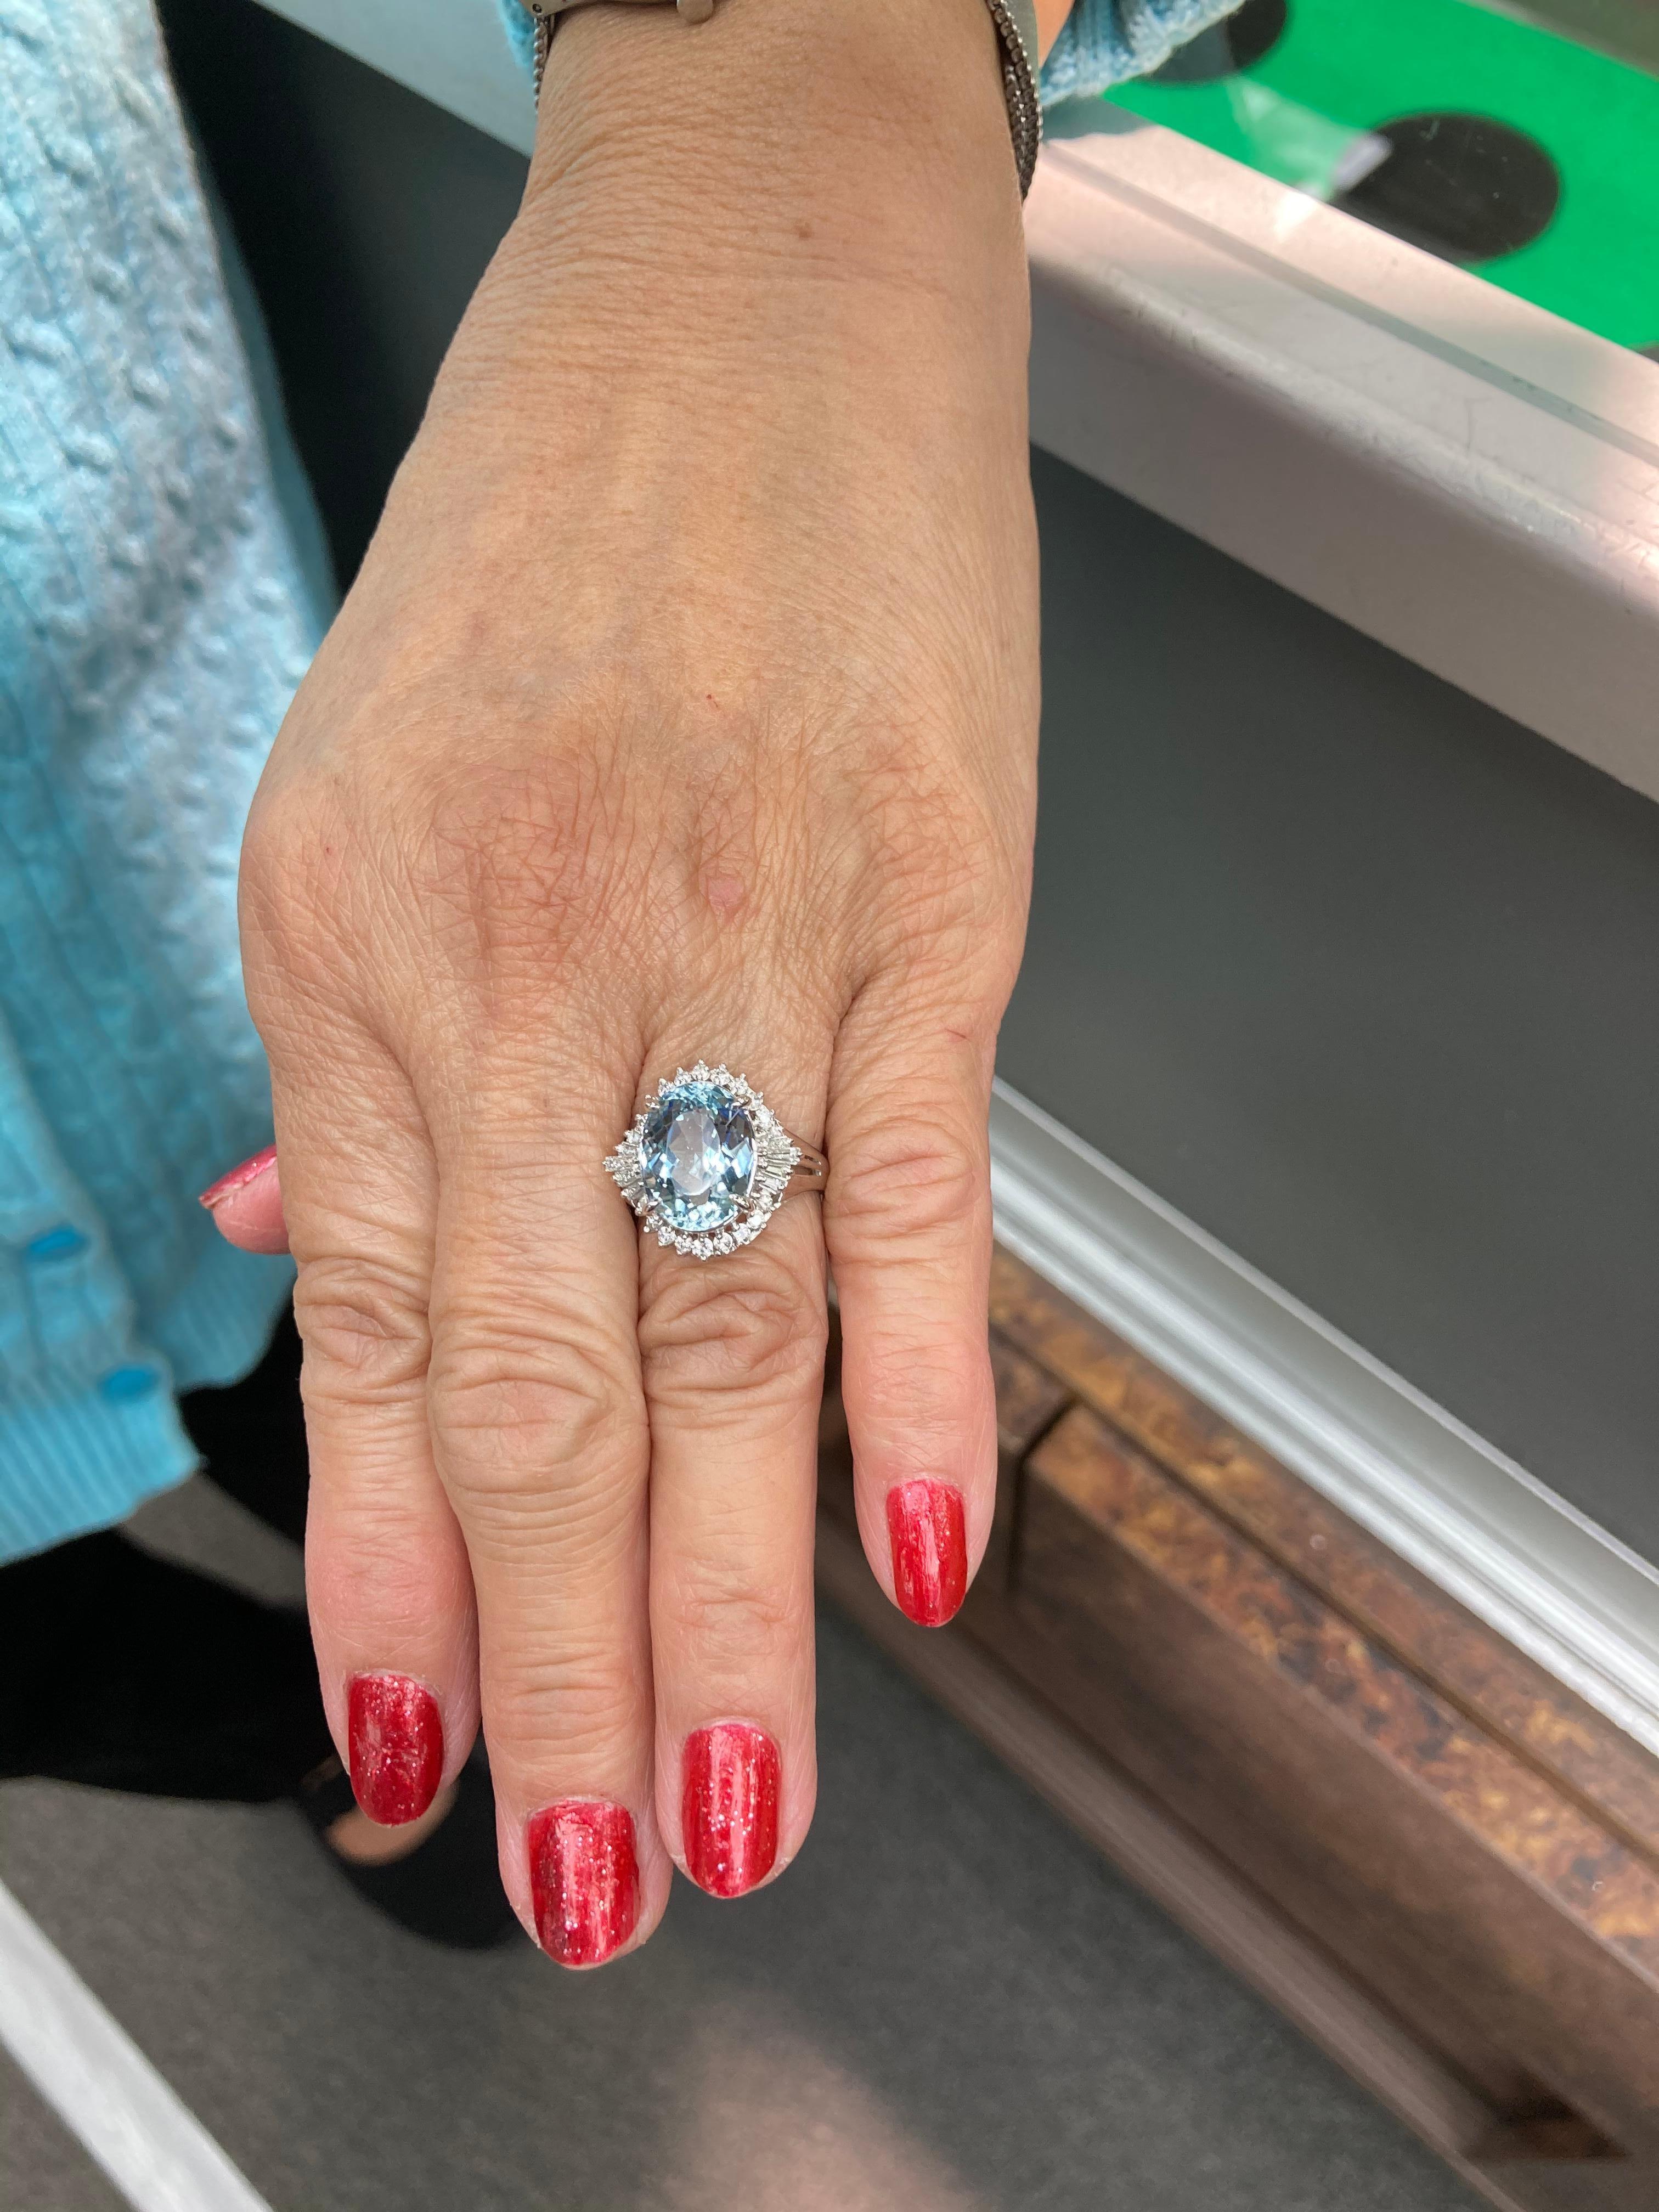 Women's Aquamarine Diamond Platinum Cocktail Ring